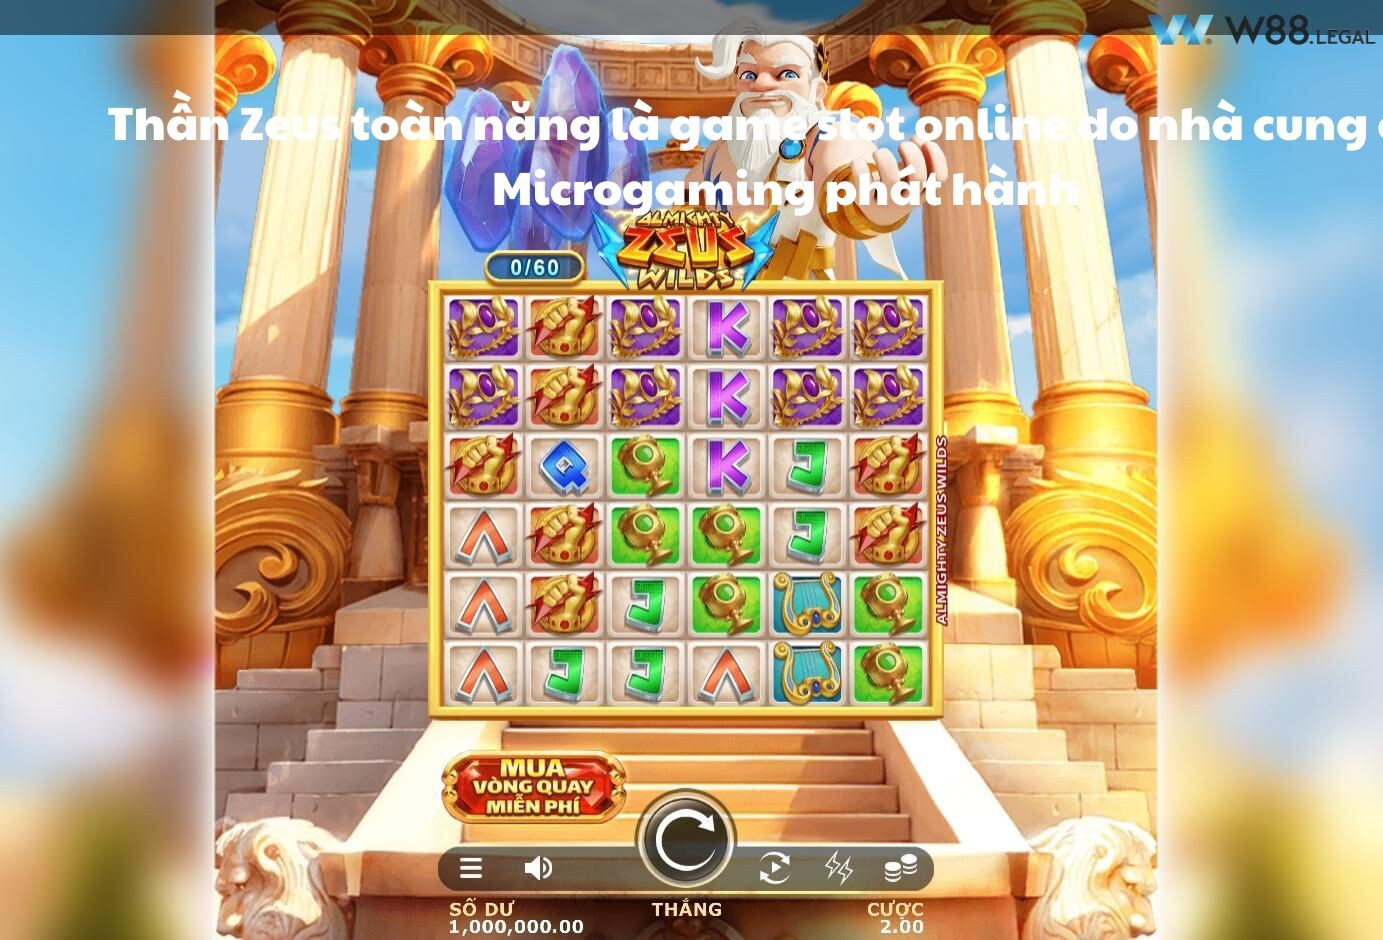 Thần Zeus toàn năng là game slot online do nhà cung cấp Microgaming phát hành